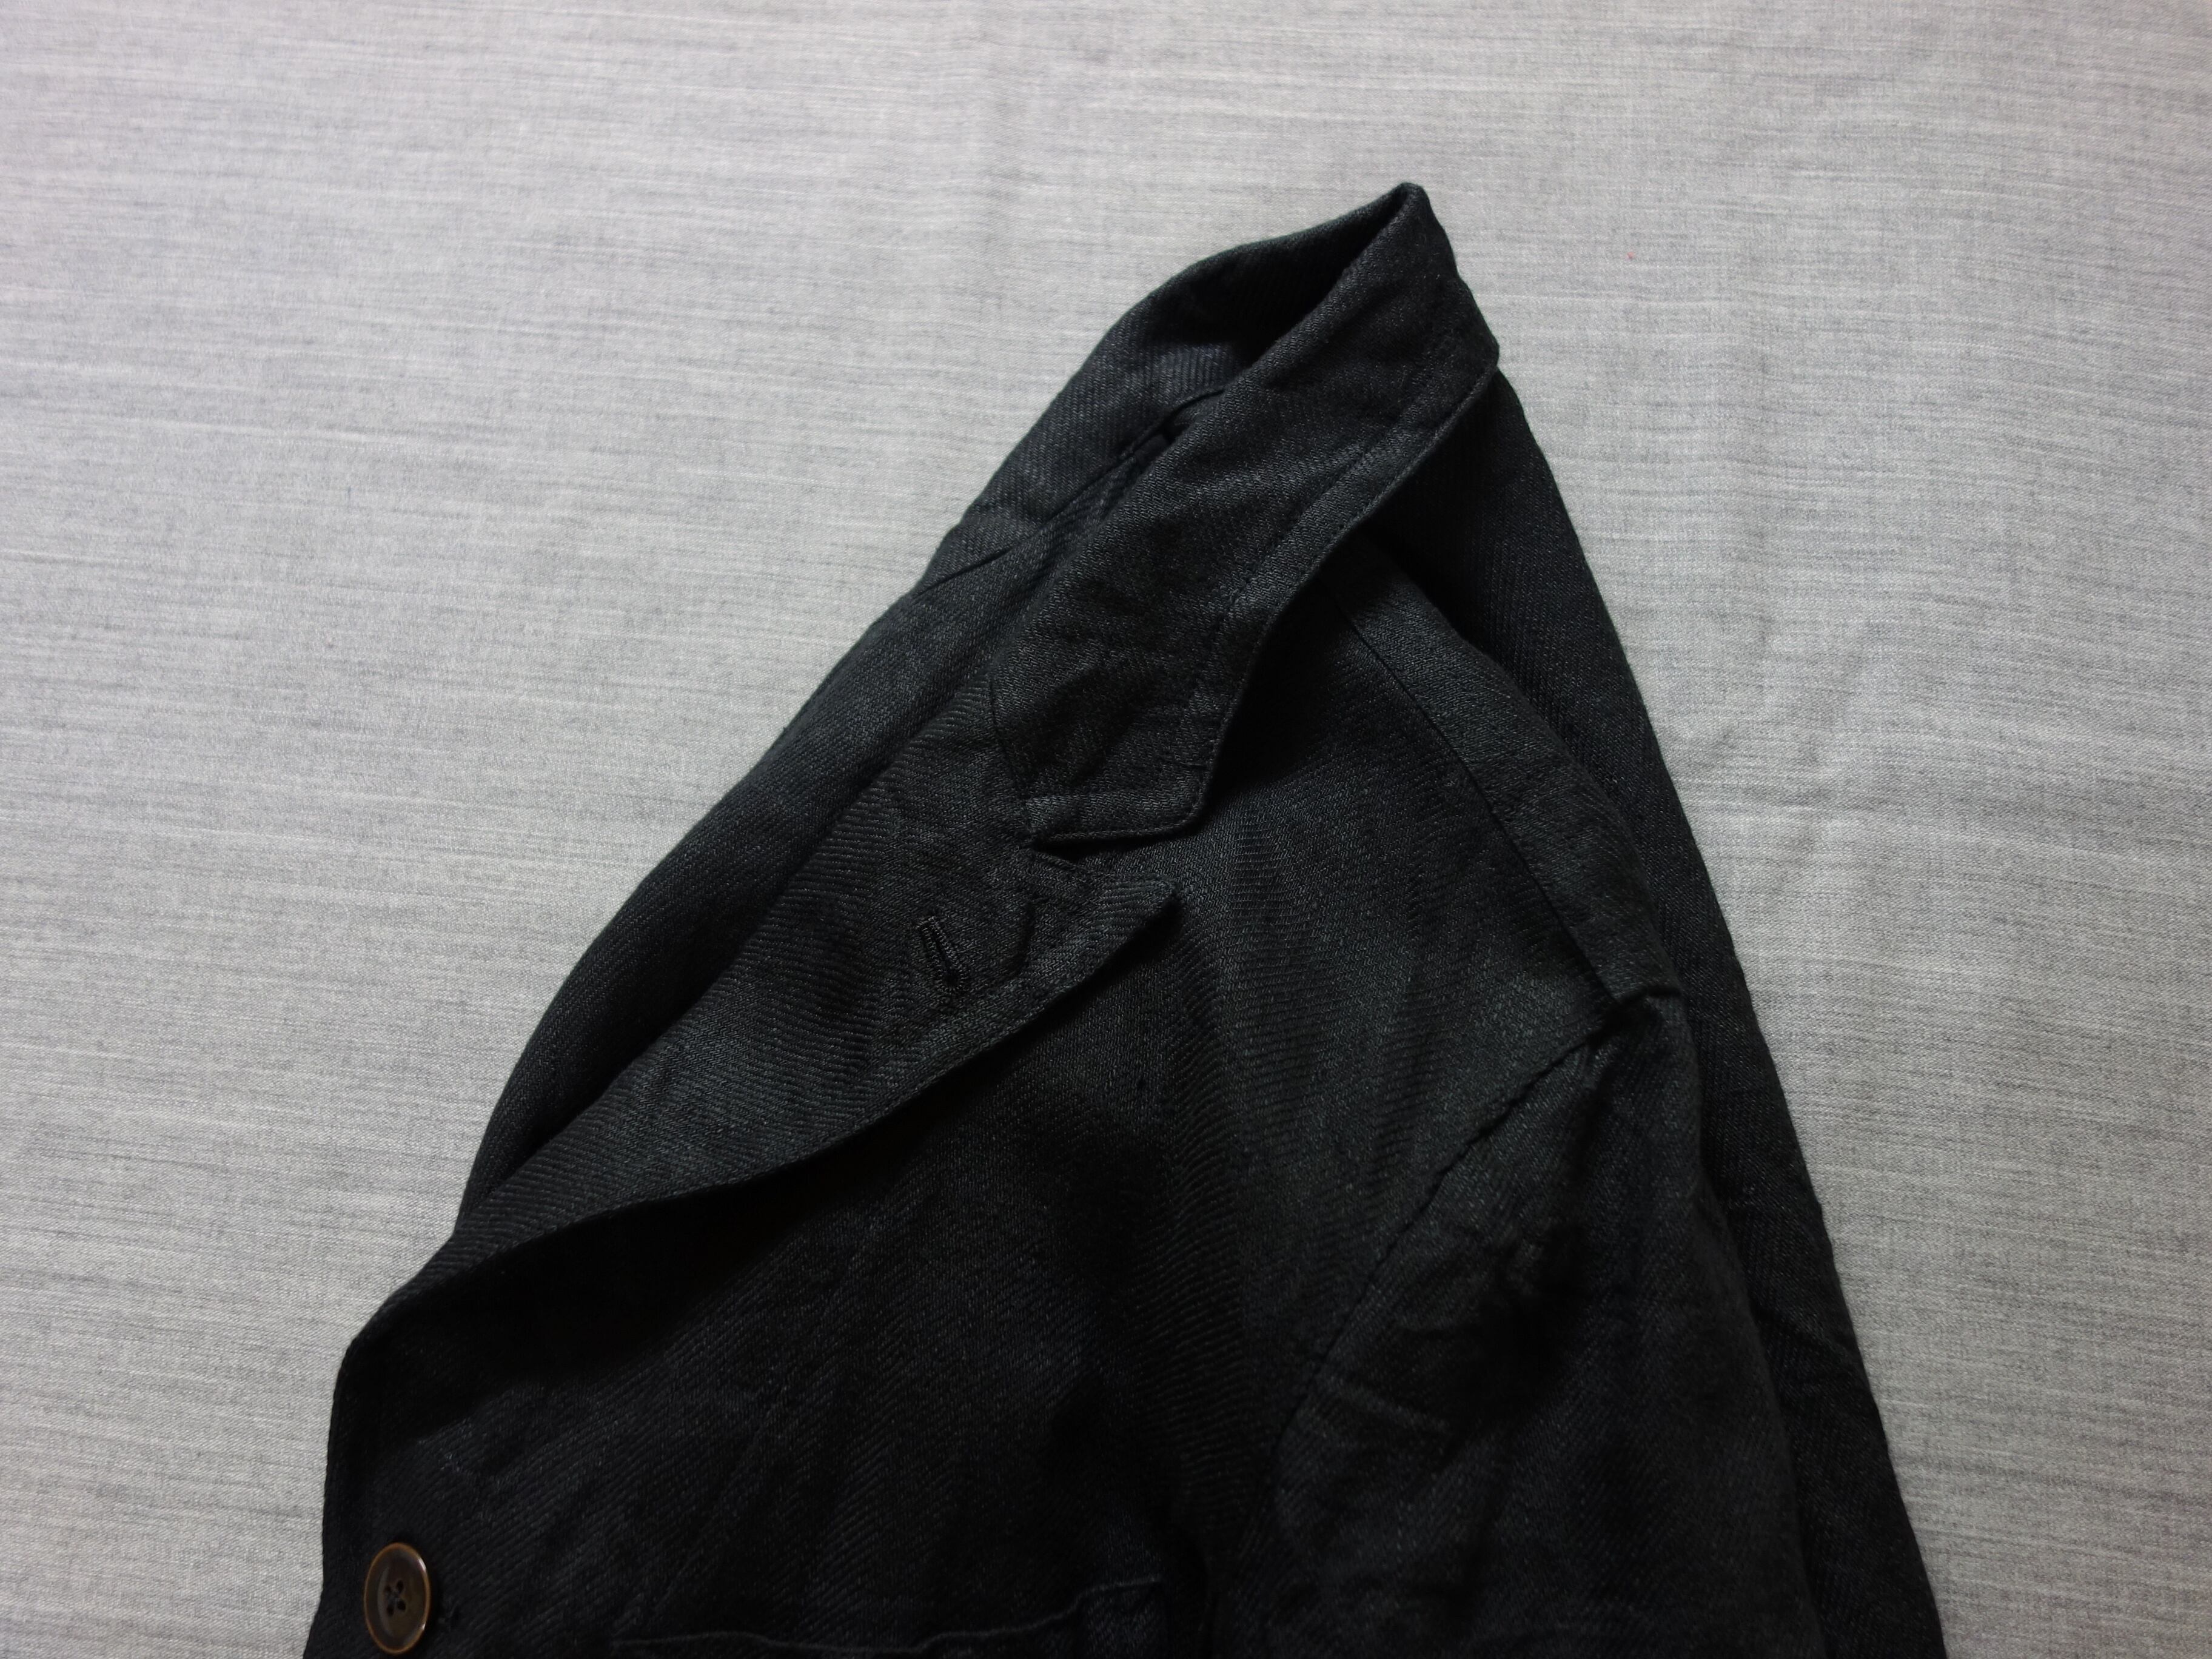 anotherlinen heavylinen coat / black